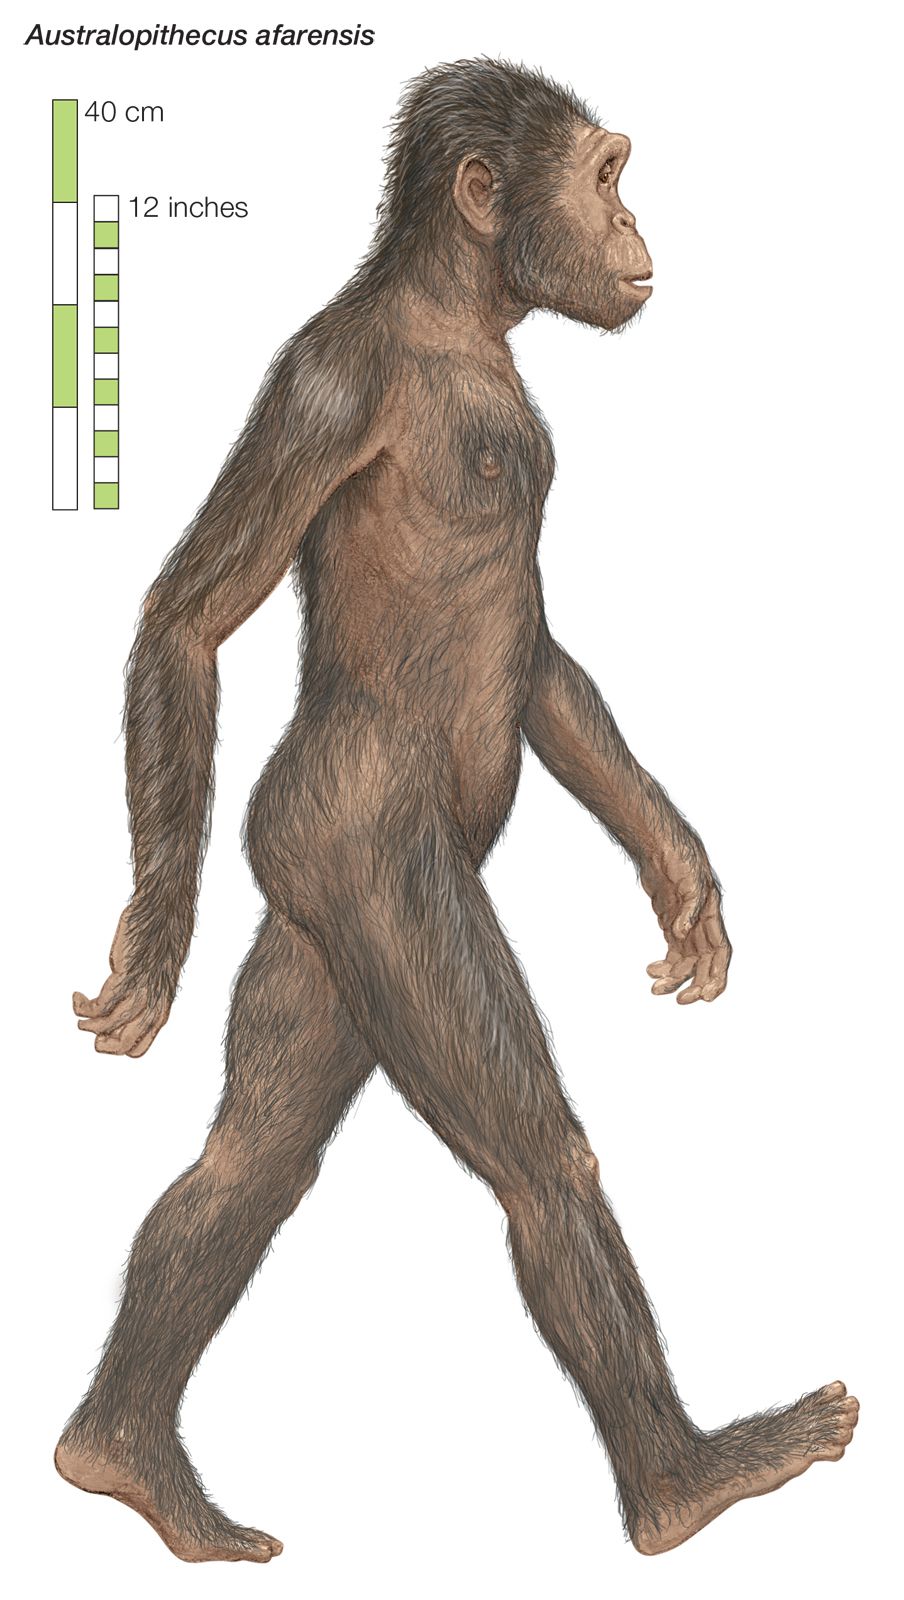 Australopithecus-afarensis-rendering-Artist.jpg